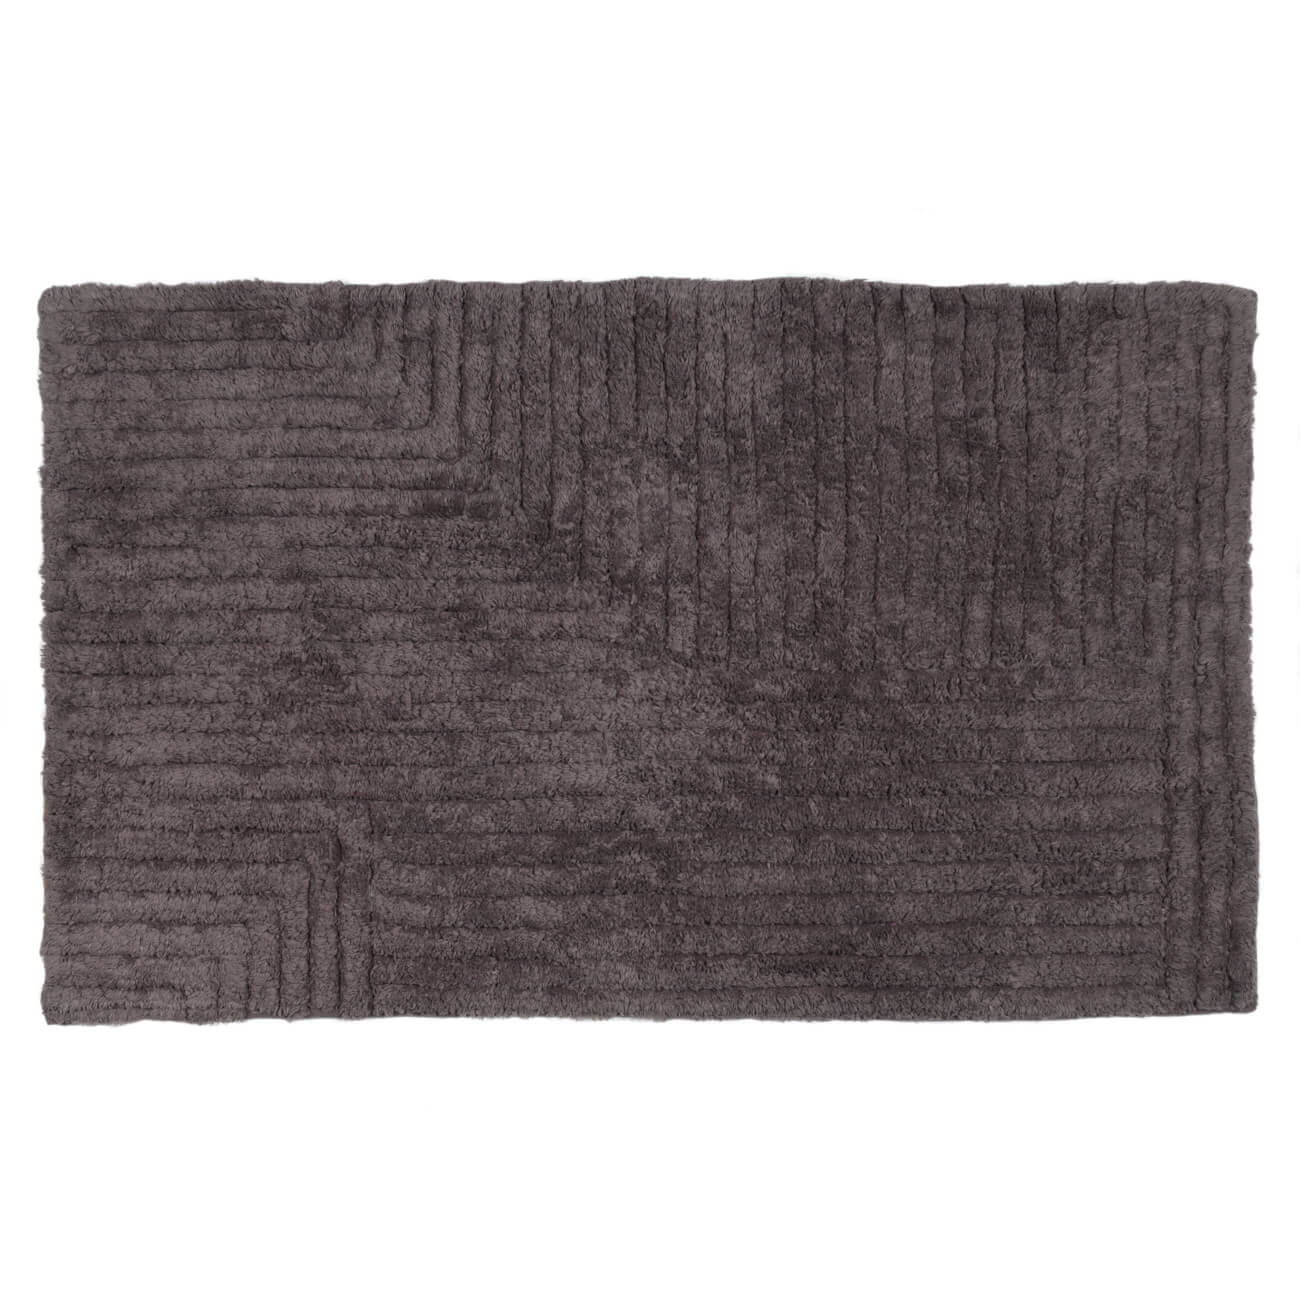 Коврик, 50х80 см, хлопок, серо-коричневый, Геометрия, Cage pattern одеяло хлопок оригинал р 140х205